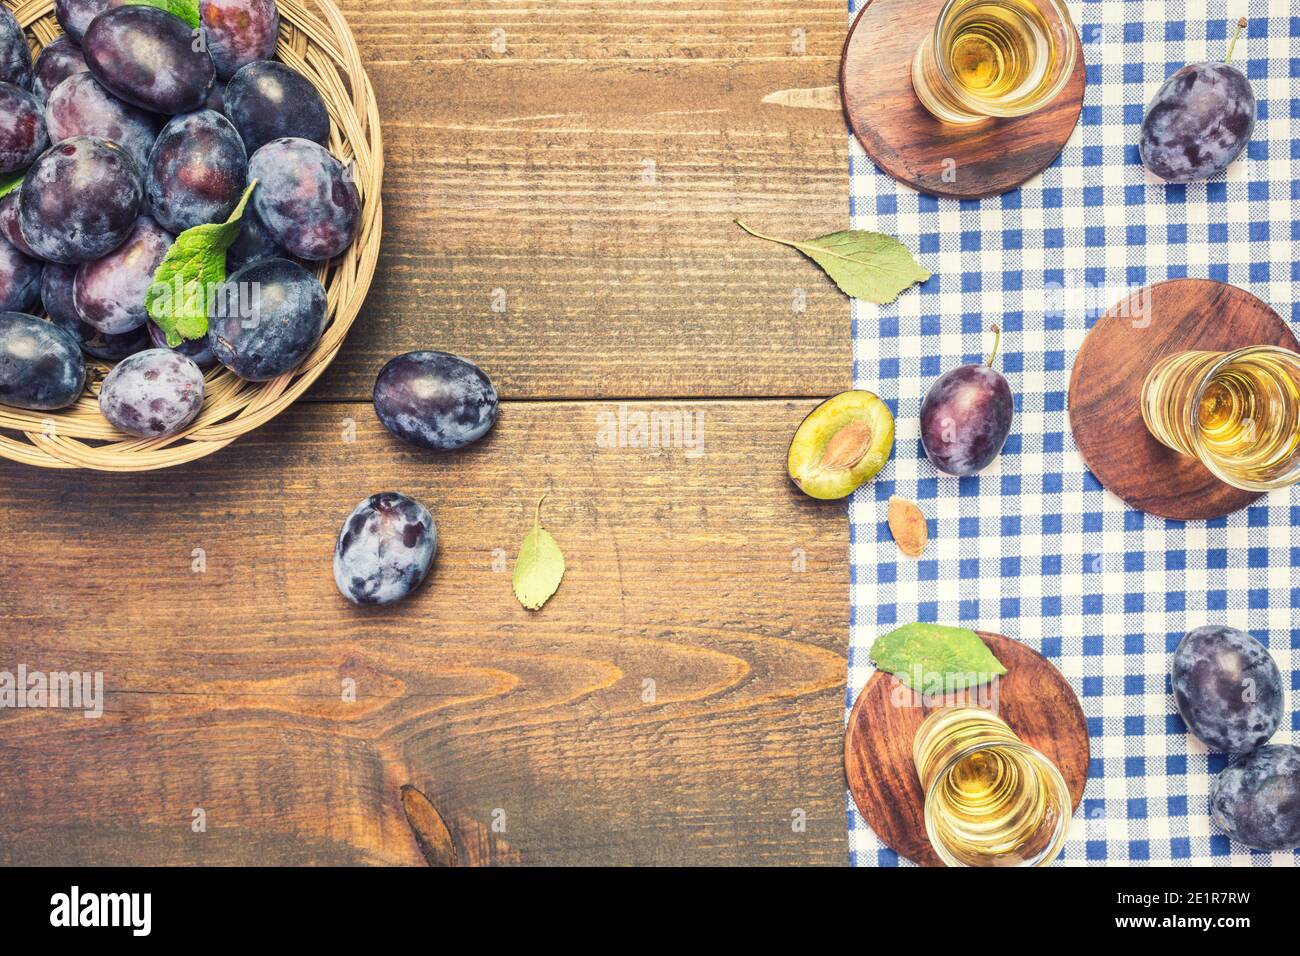 Le rakija, le raki ou le rakia est un cognac de boisson alcoolisée des Balkans à base de fruits fermentés. Rakia de prune sur une table en bois rustique. Banque D'Images